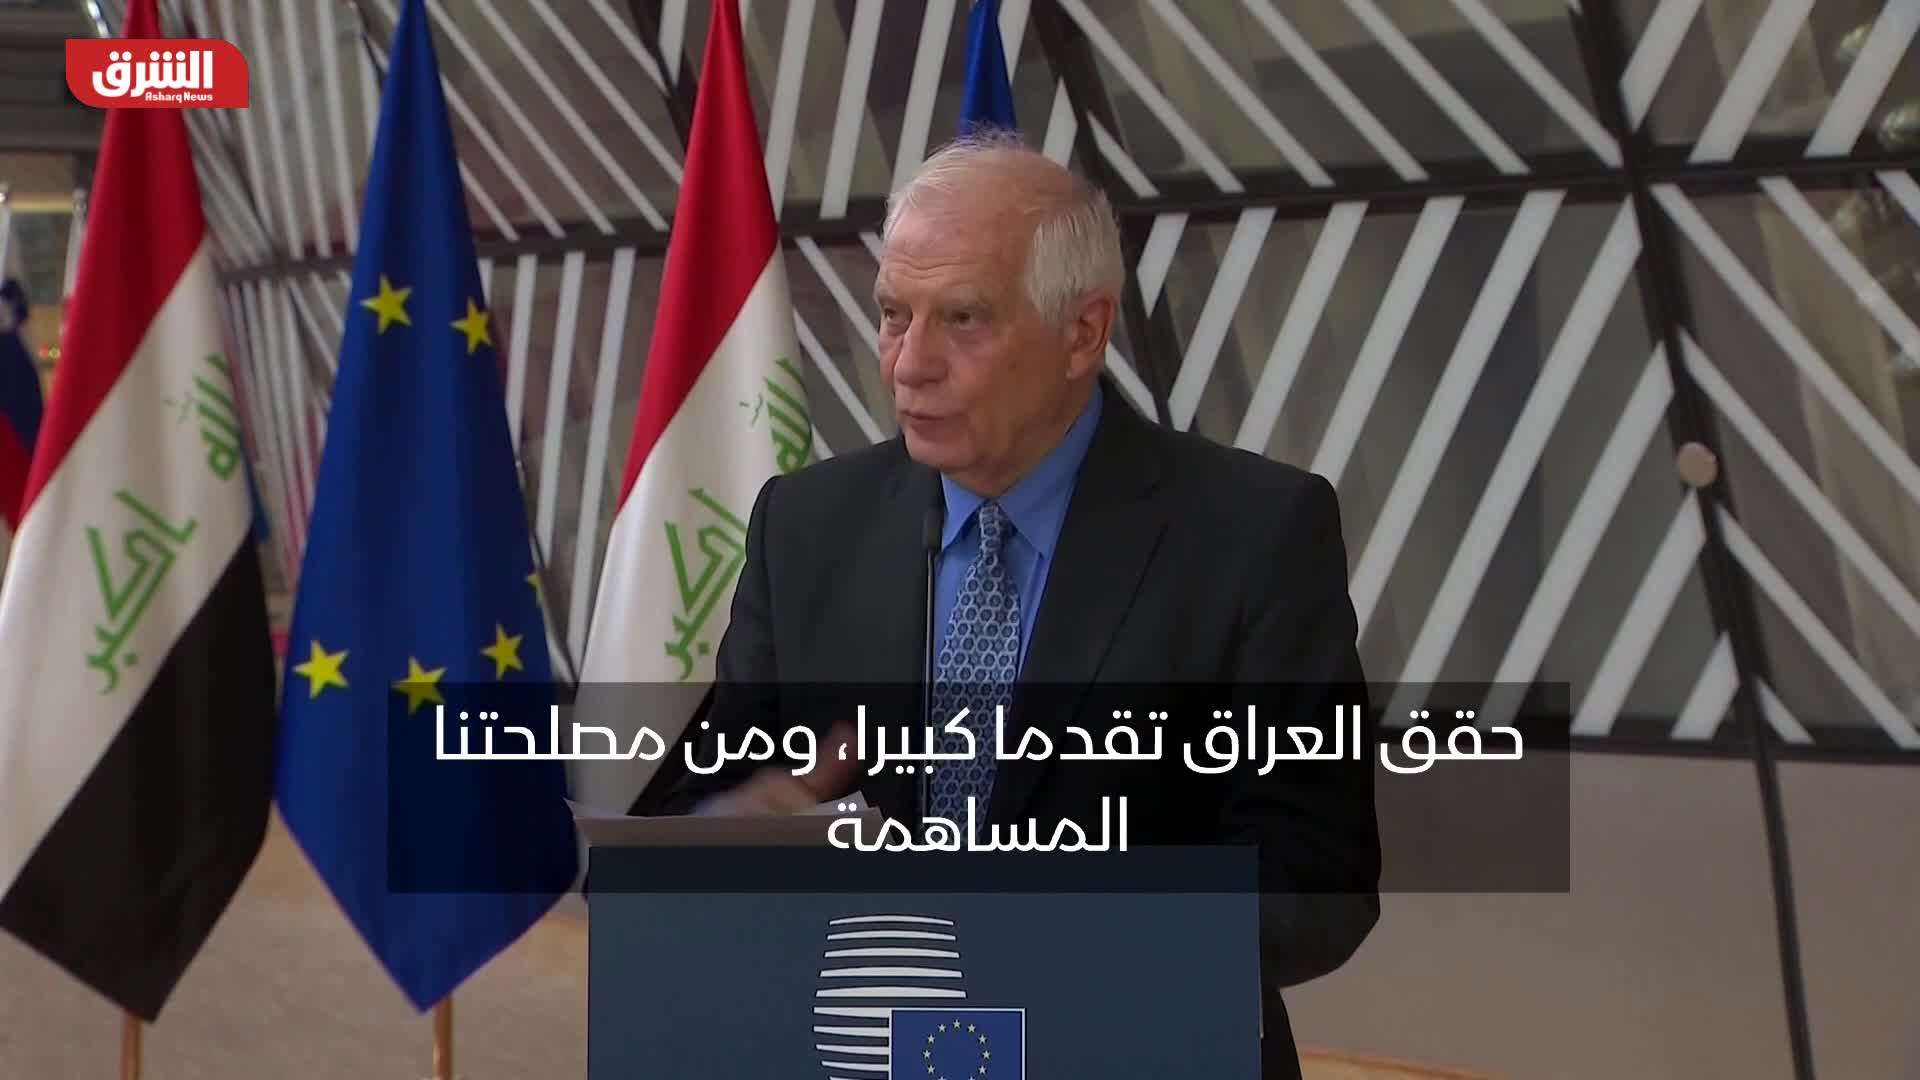 بوريل: من مصلحة الاتحاد الأوروبي المساهمة في زيادة استقرار الوضع في العراق